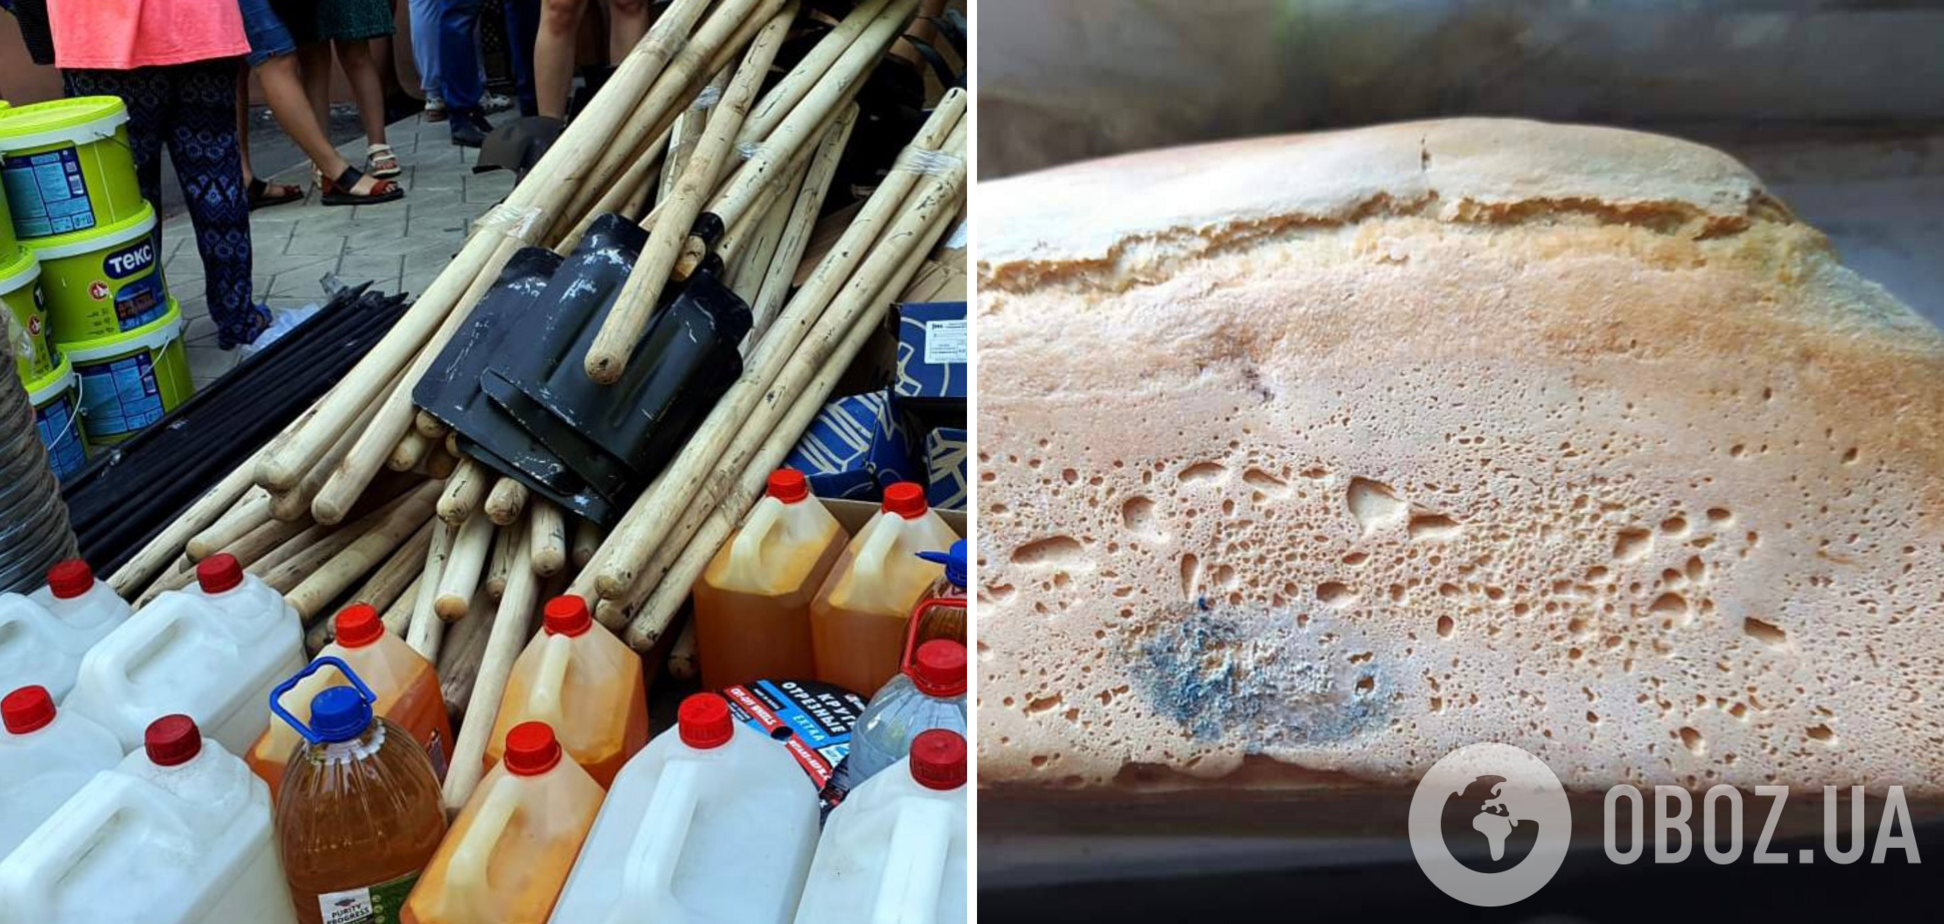 Хліб із пліснявою та тушонка з вимені: мешканцям Маріуполя надіслали гуманітарну допомогу від 'Єдиної Росії'. Фото